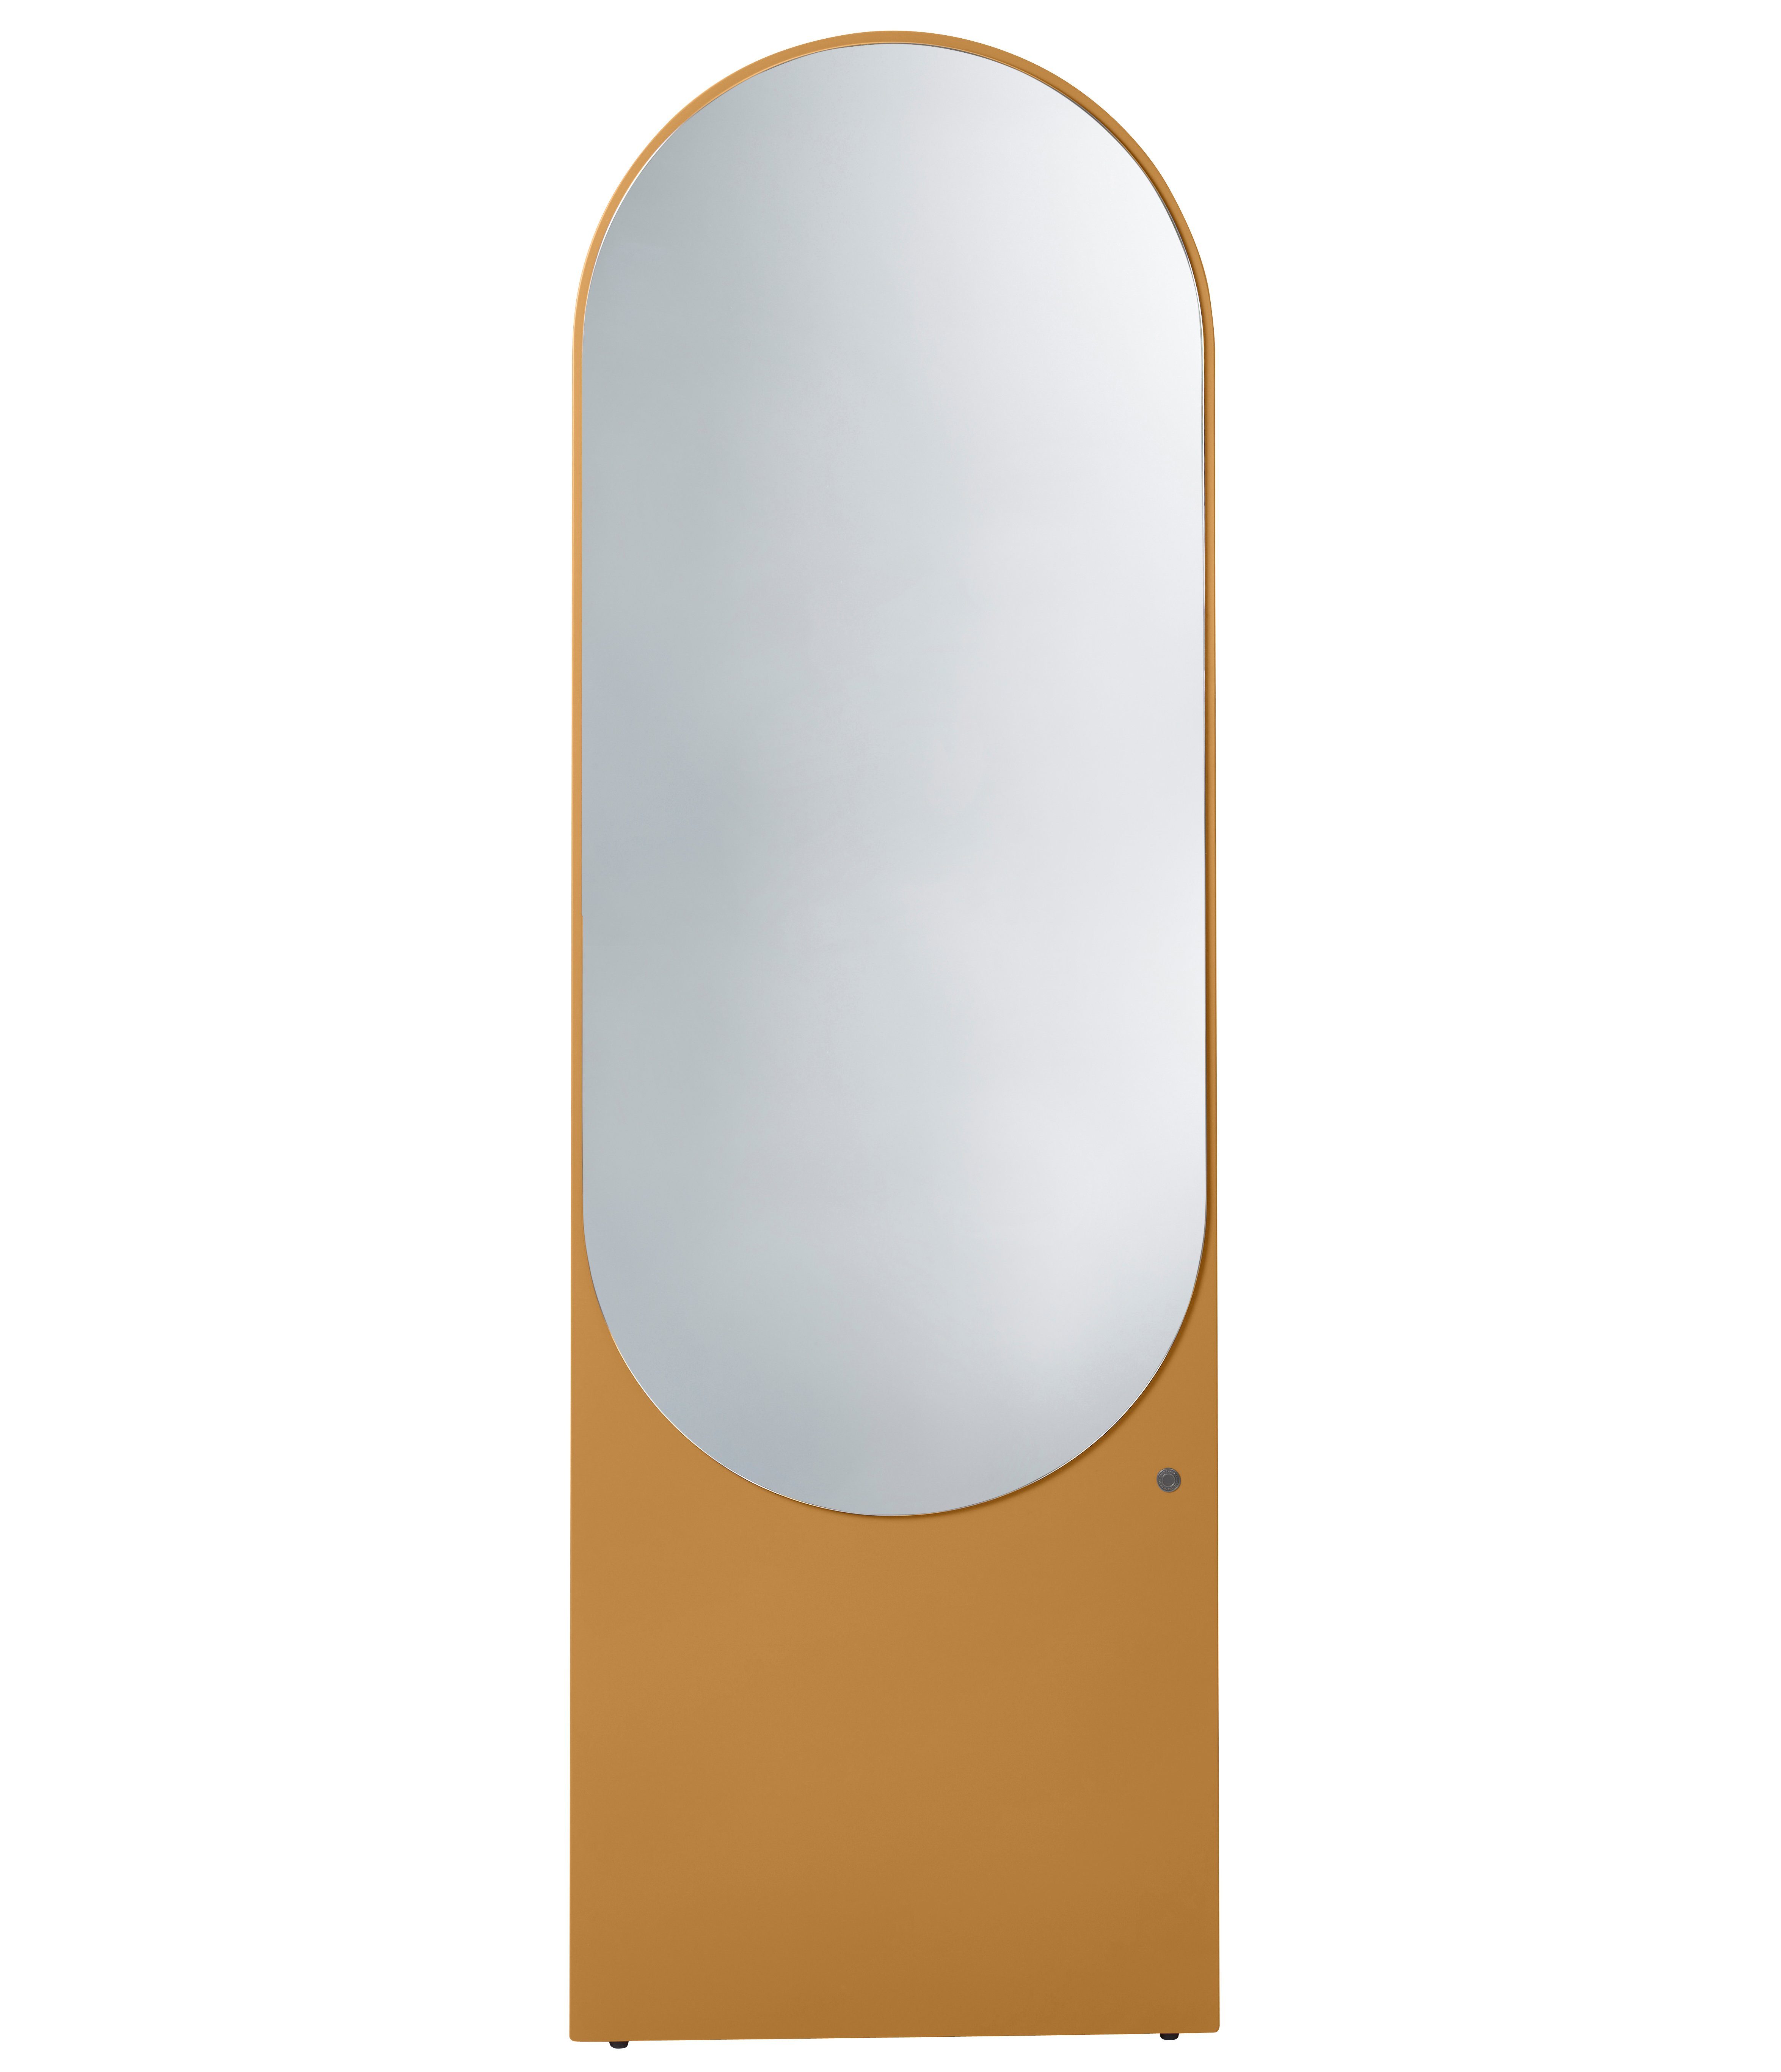 - Spiegel vielen schönen TAILOR Standspiegel hochwertig farbiges Highlight - lackiert, COLOR in Form HOME Wandlehnender TOM & Farben MIRROR besonderer in mustard_029